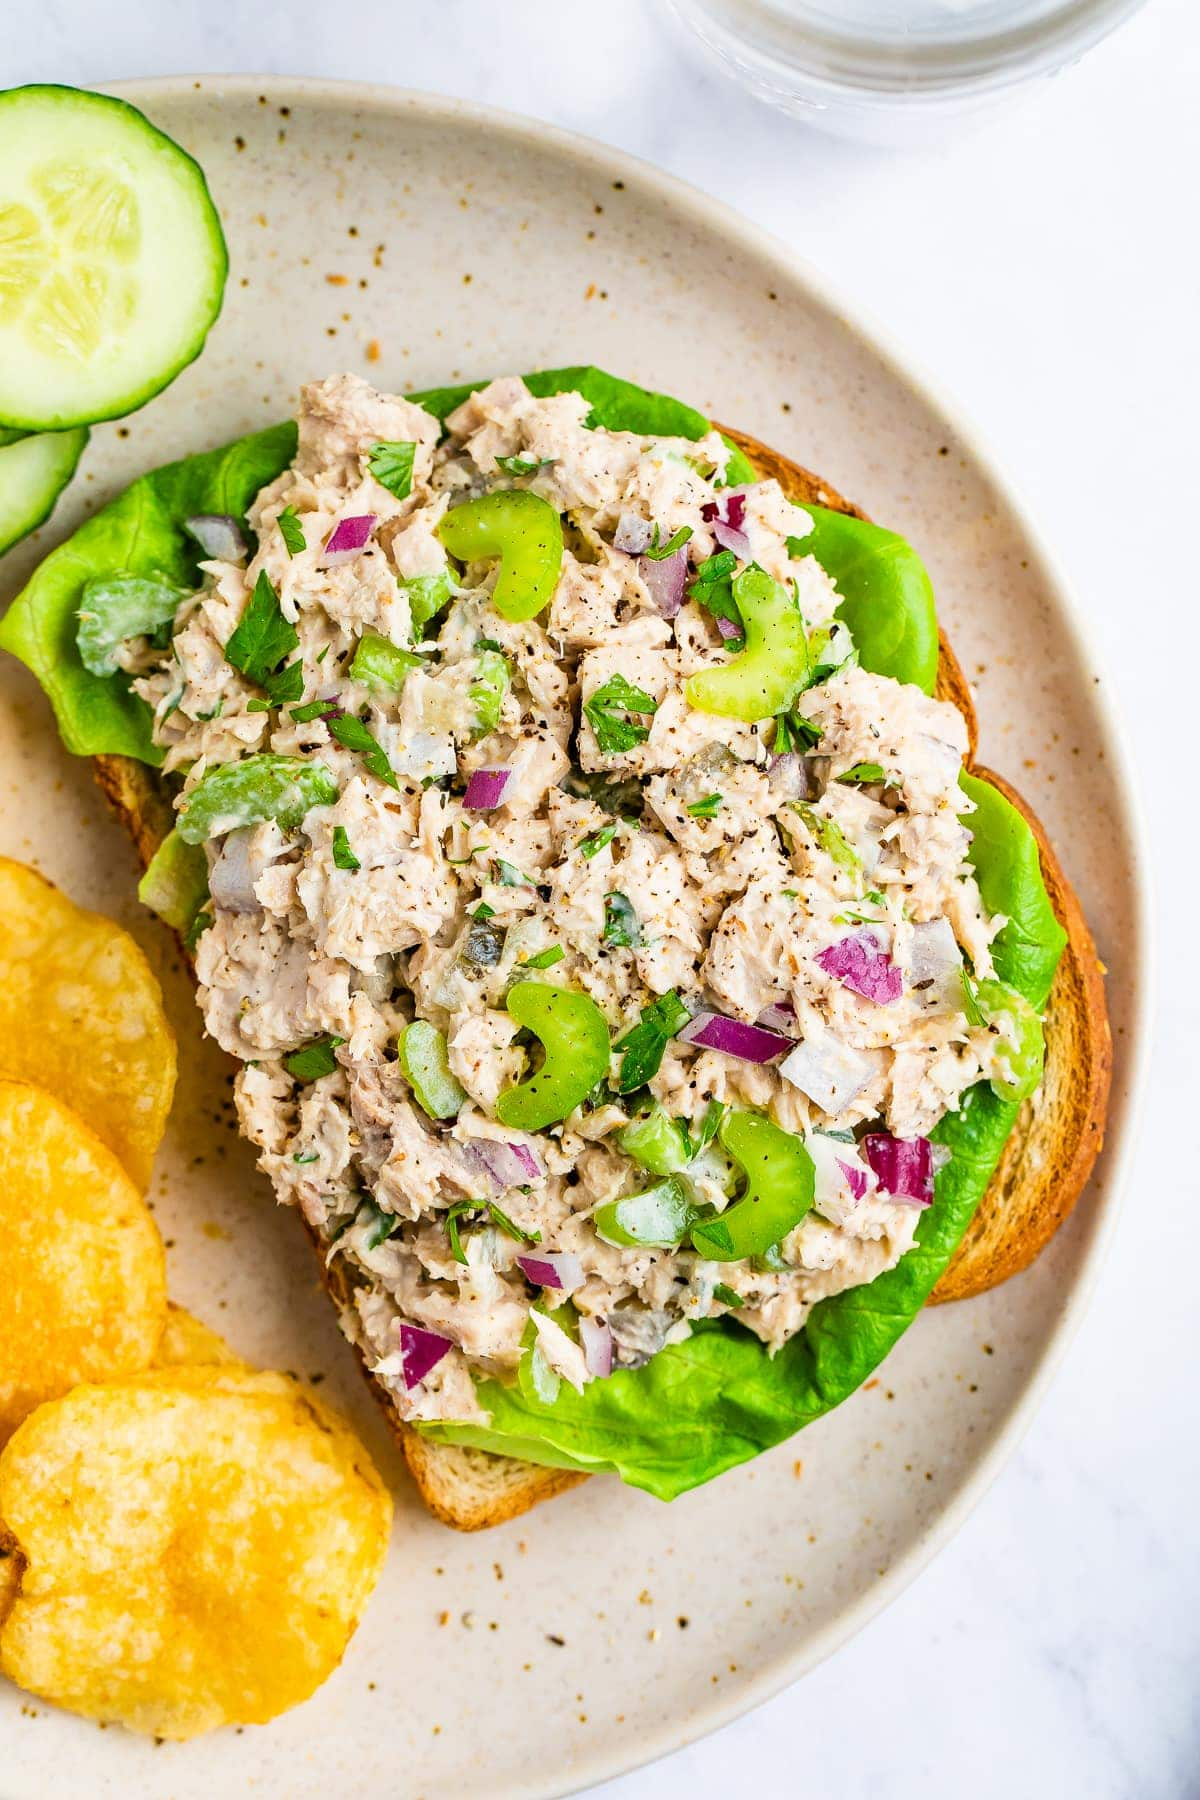 Salada de atum numa sanduíche de cara aberta com alface. Em um prato com batatas fritas e pepinos.